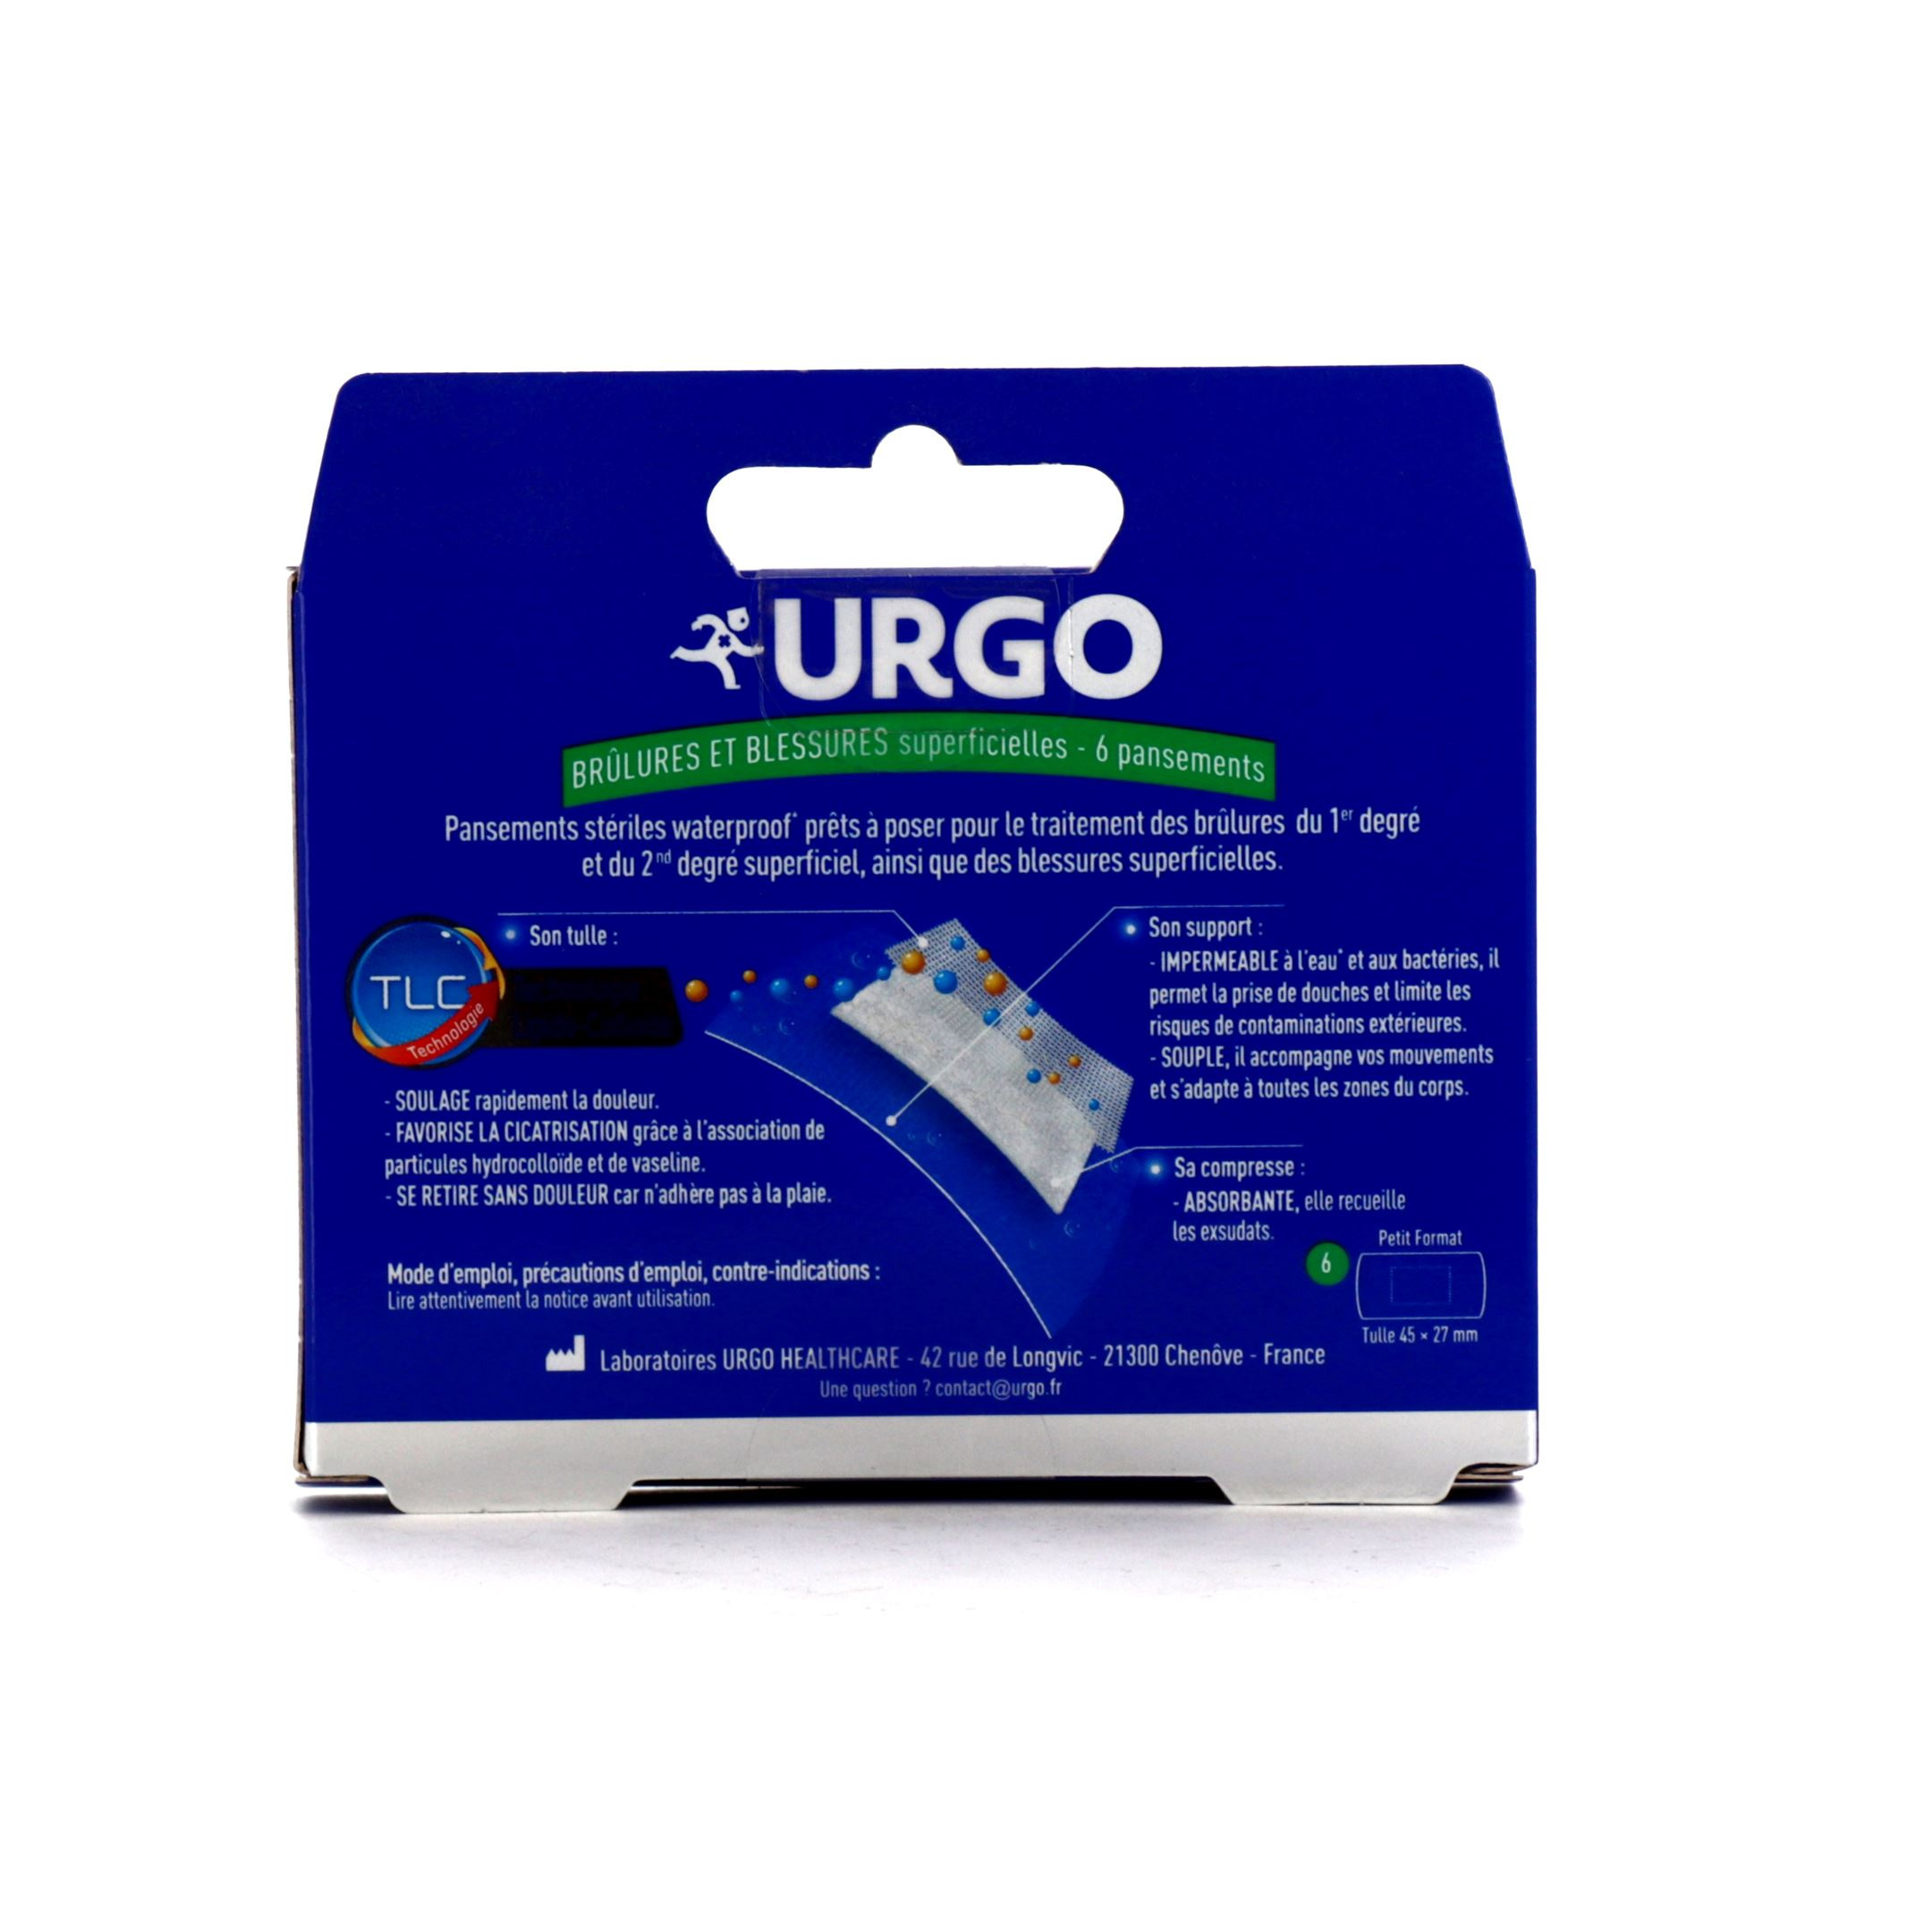 Pansements waterproof Urgo pour brûlures et blessures superficielles